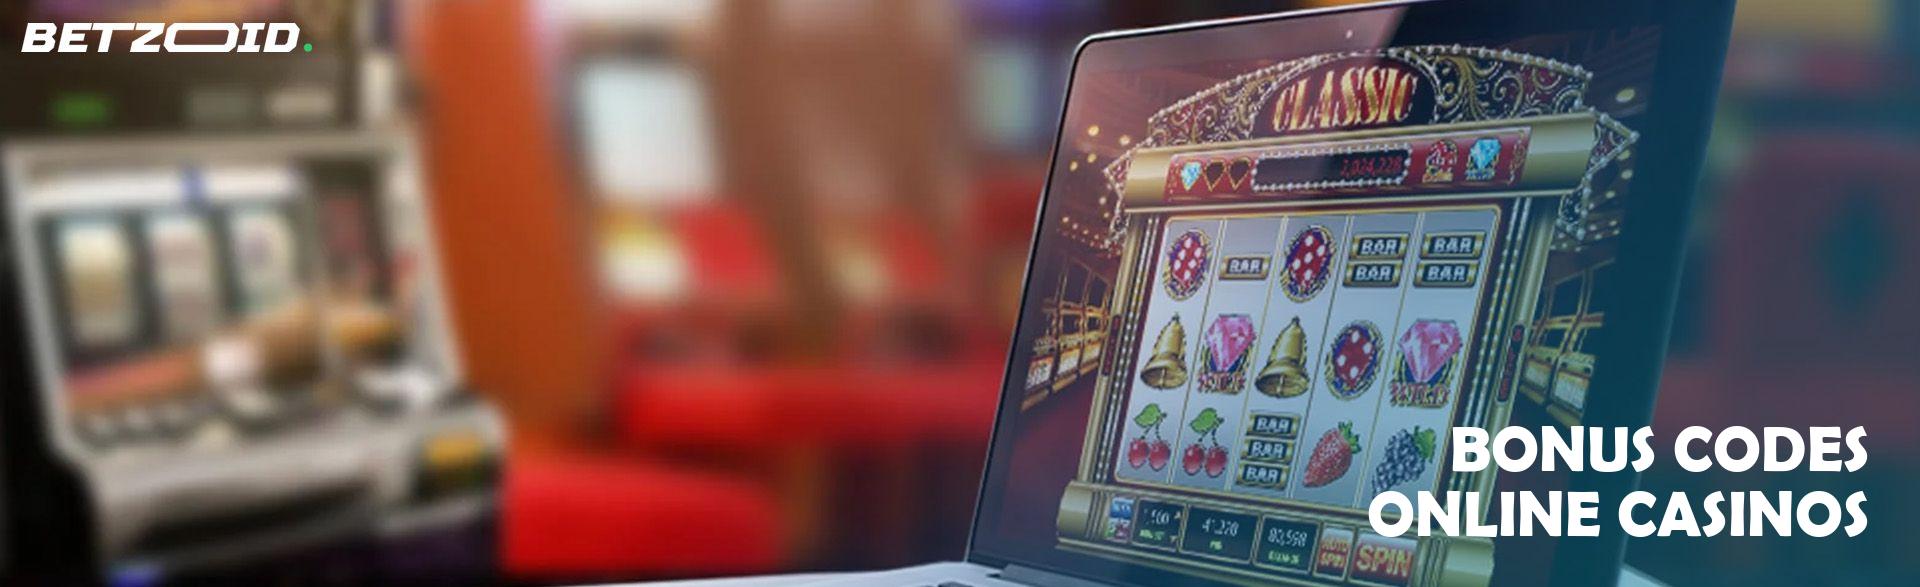 Bonus Codes Online Casinos.